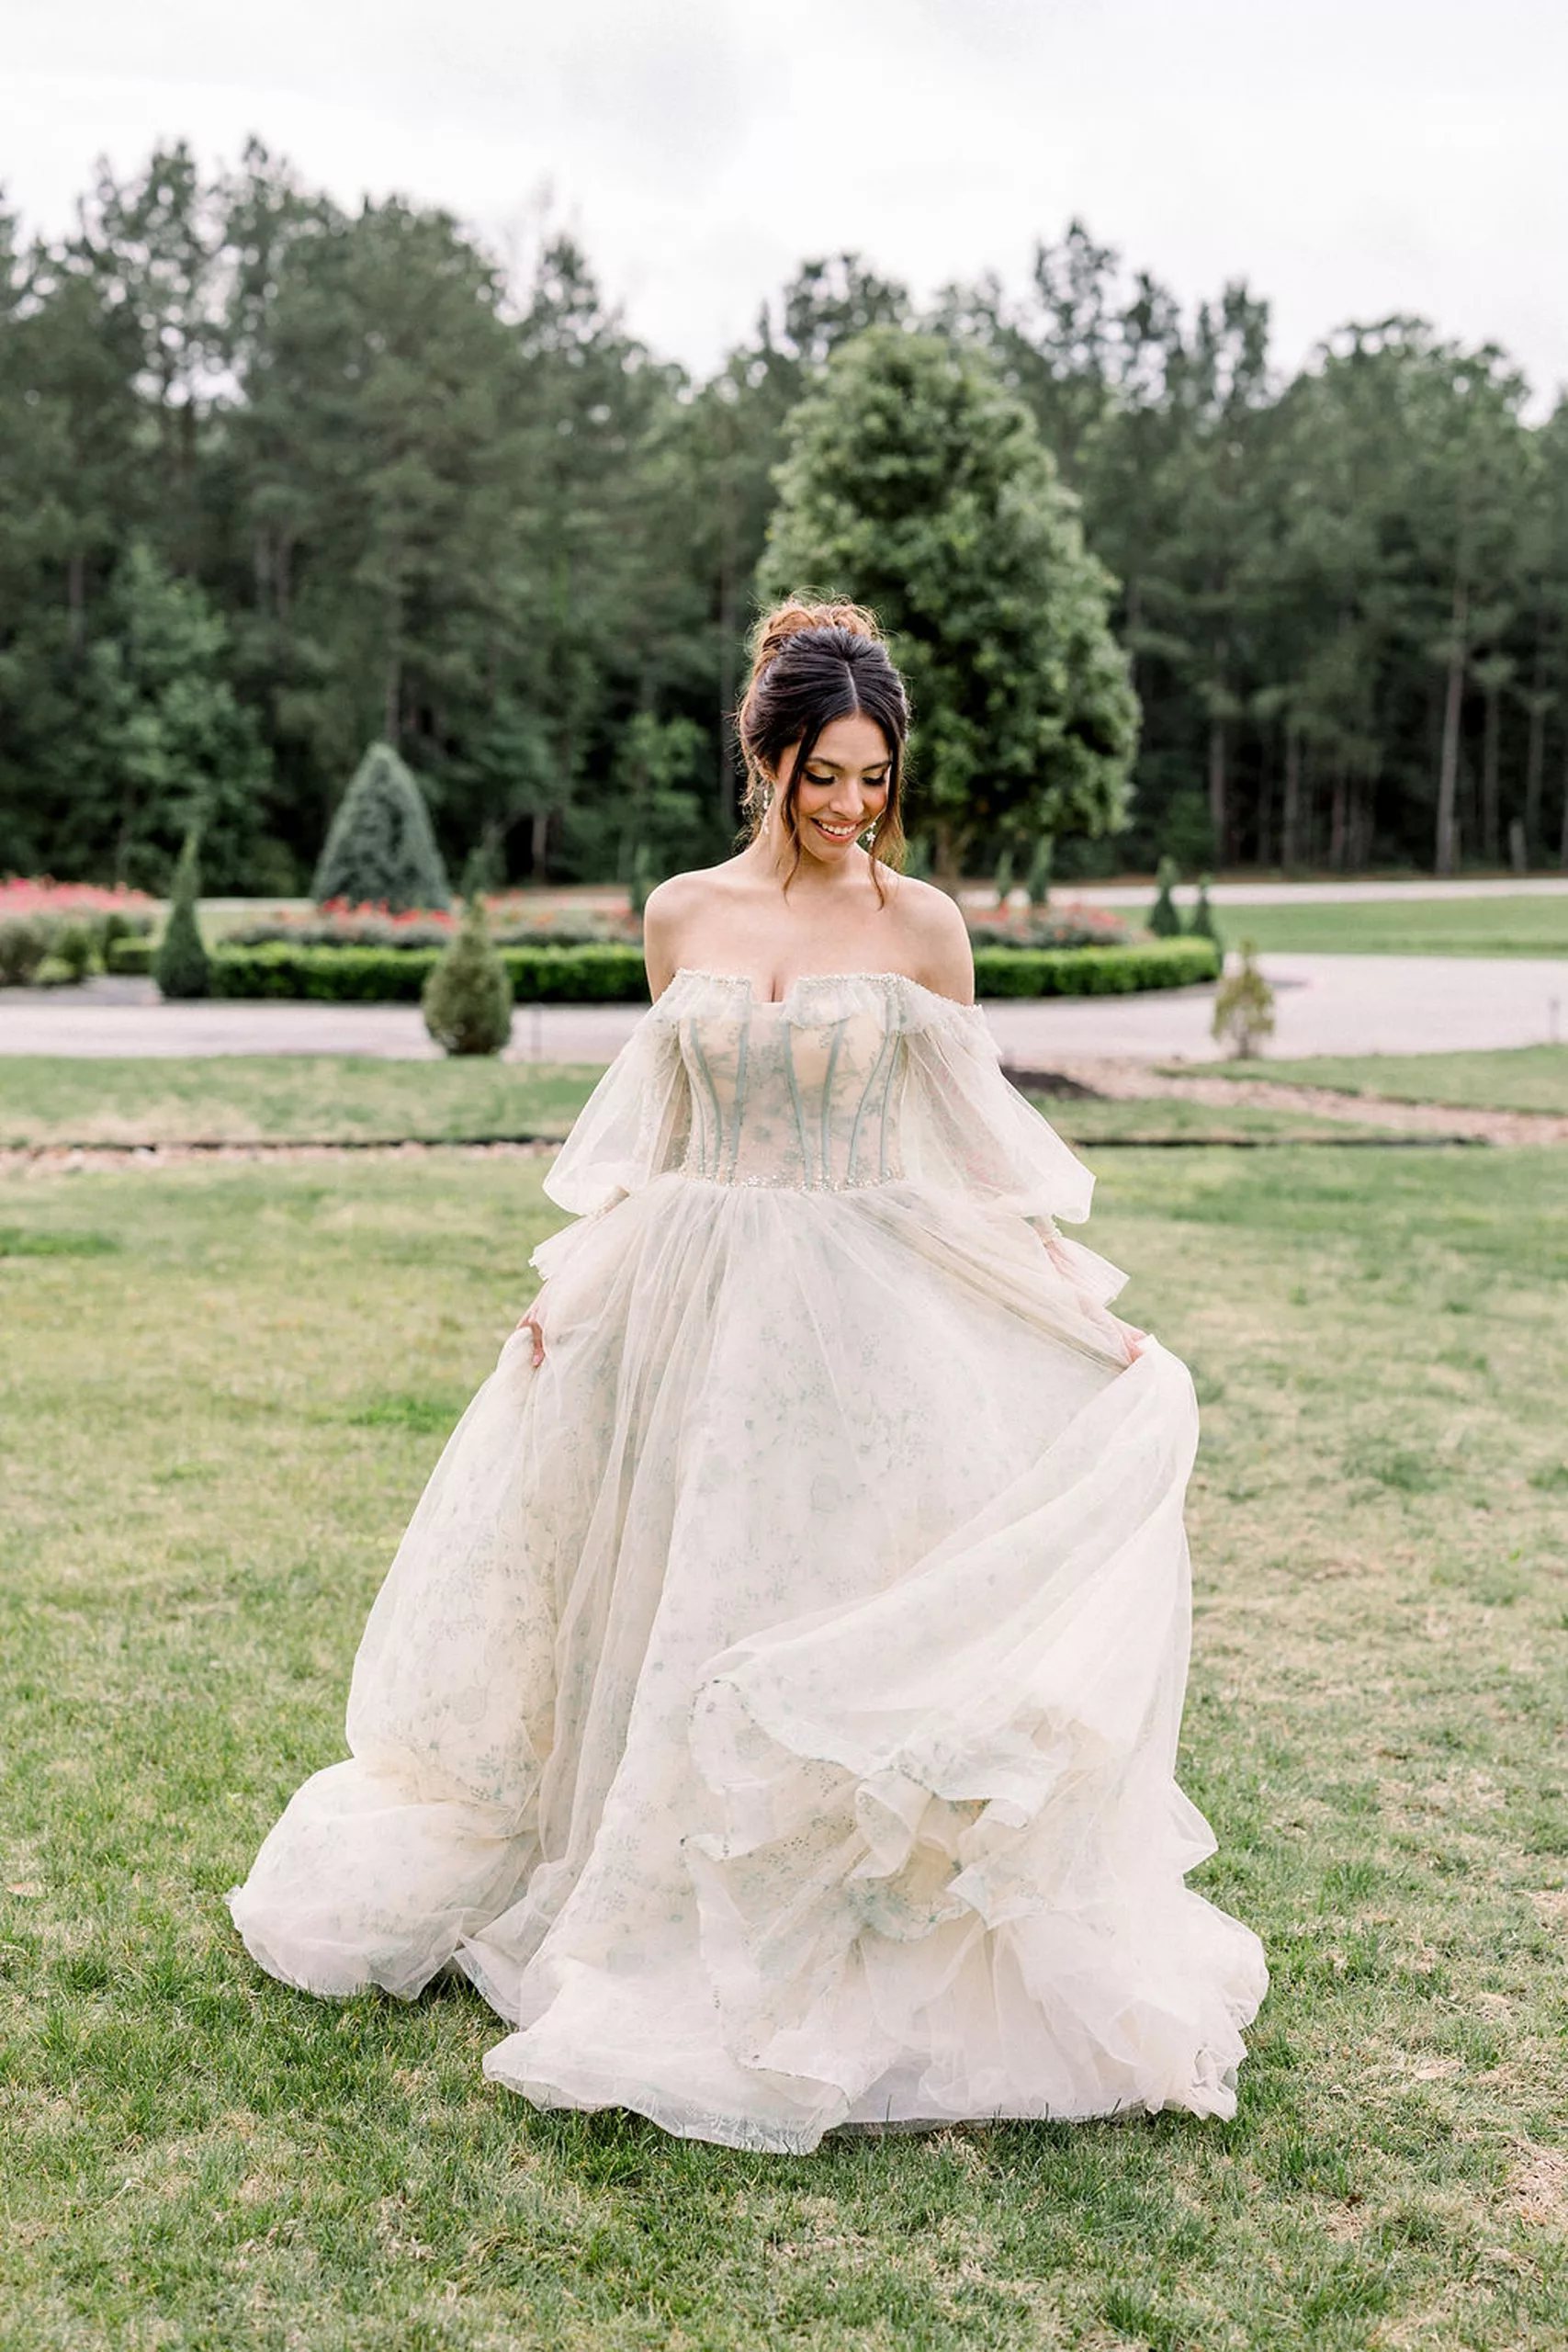 A bride in a beige dress twirls in a garden yard